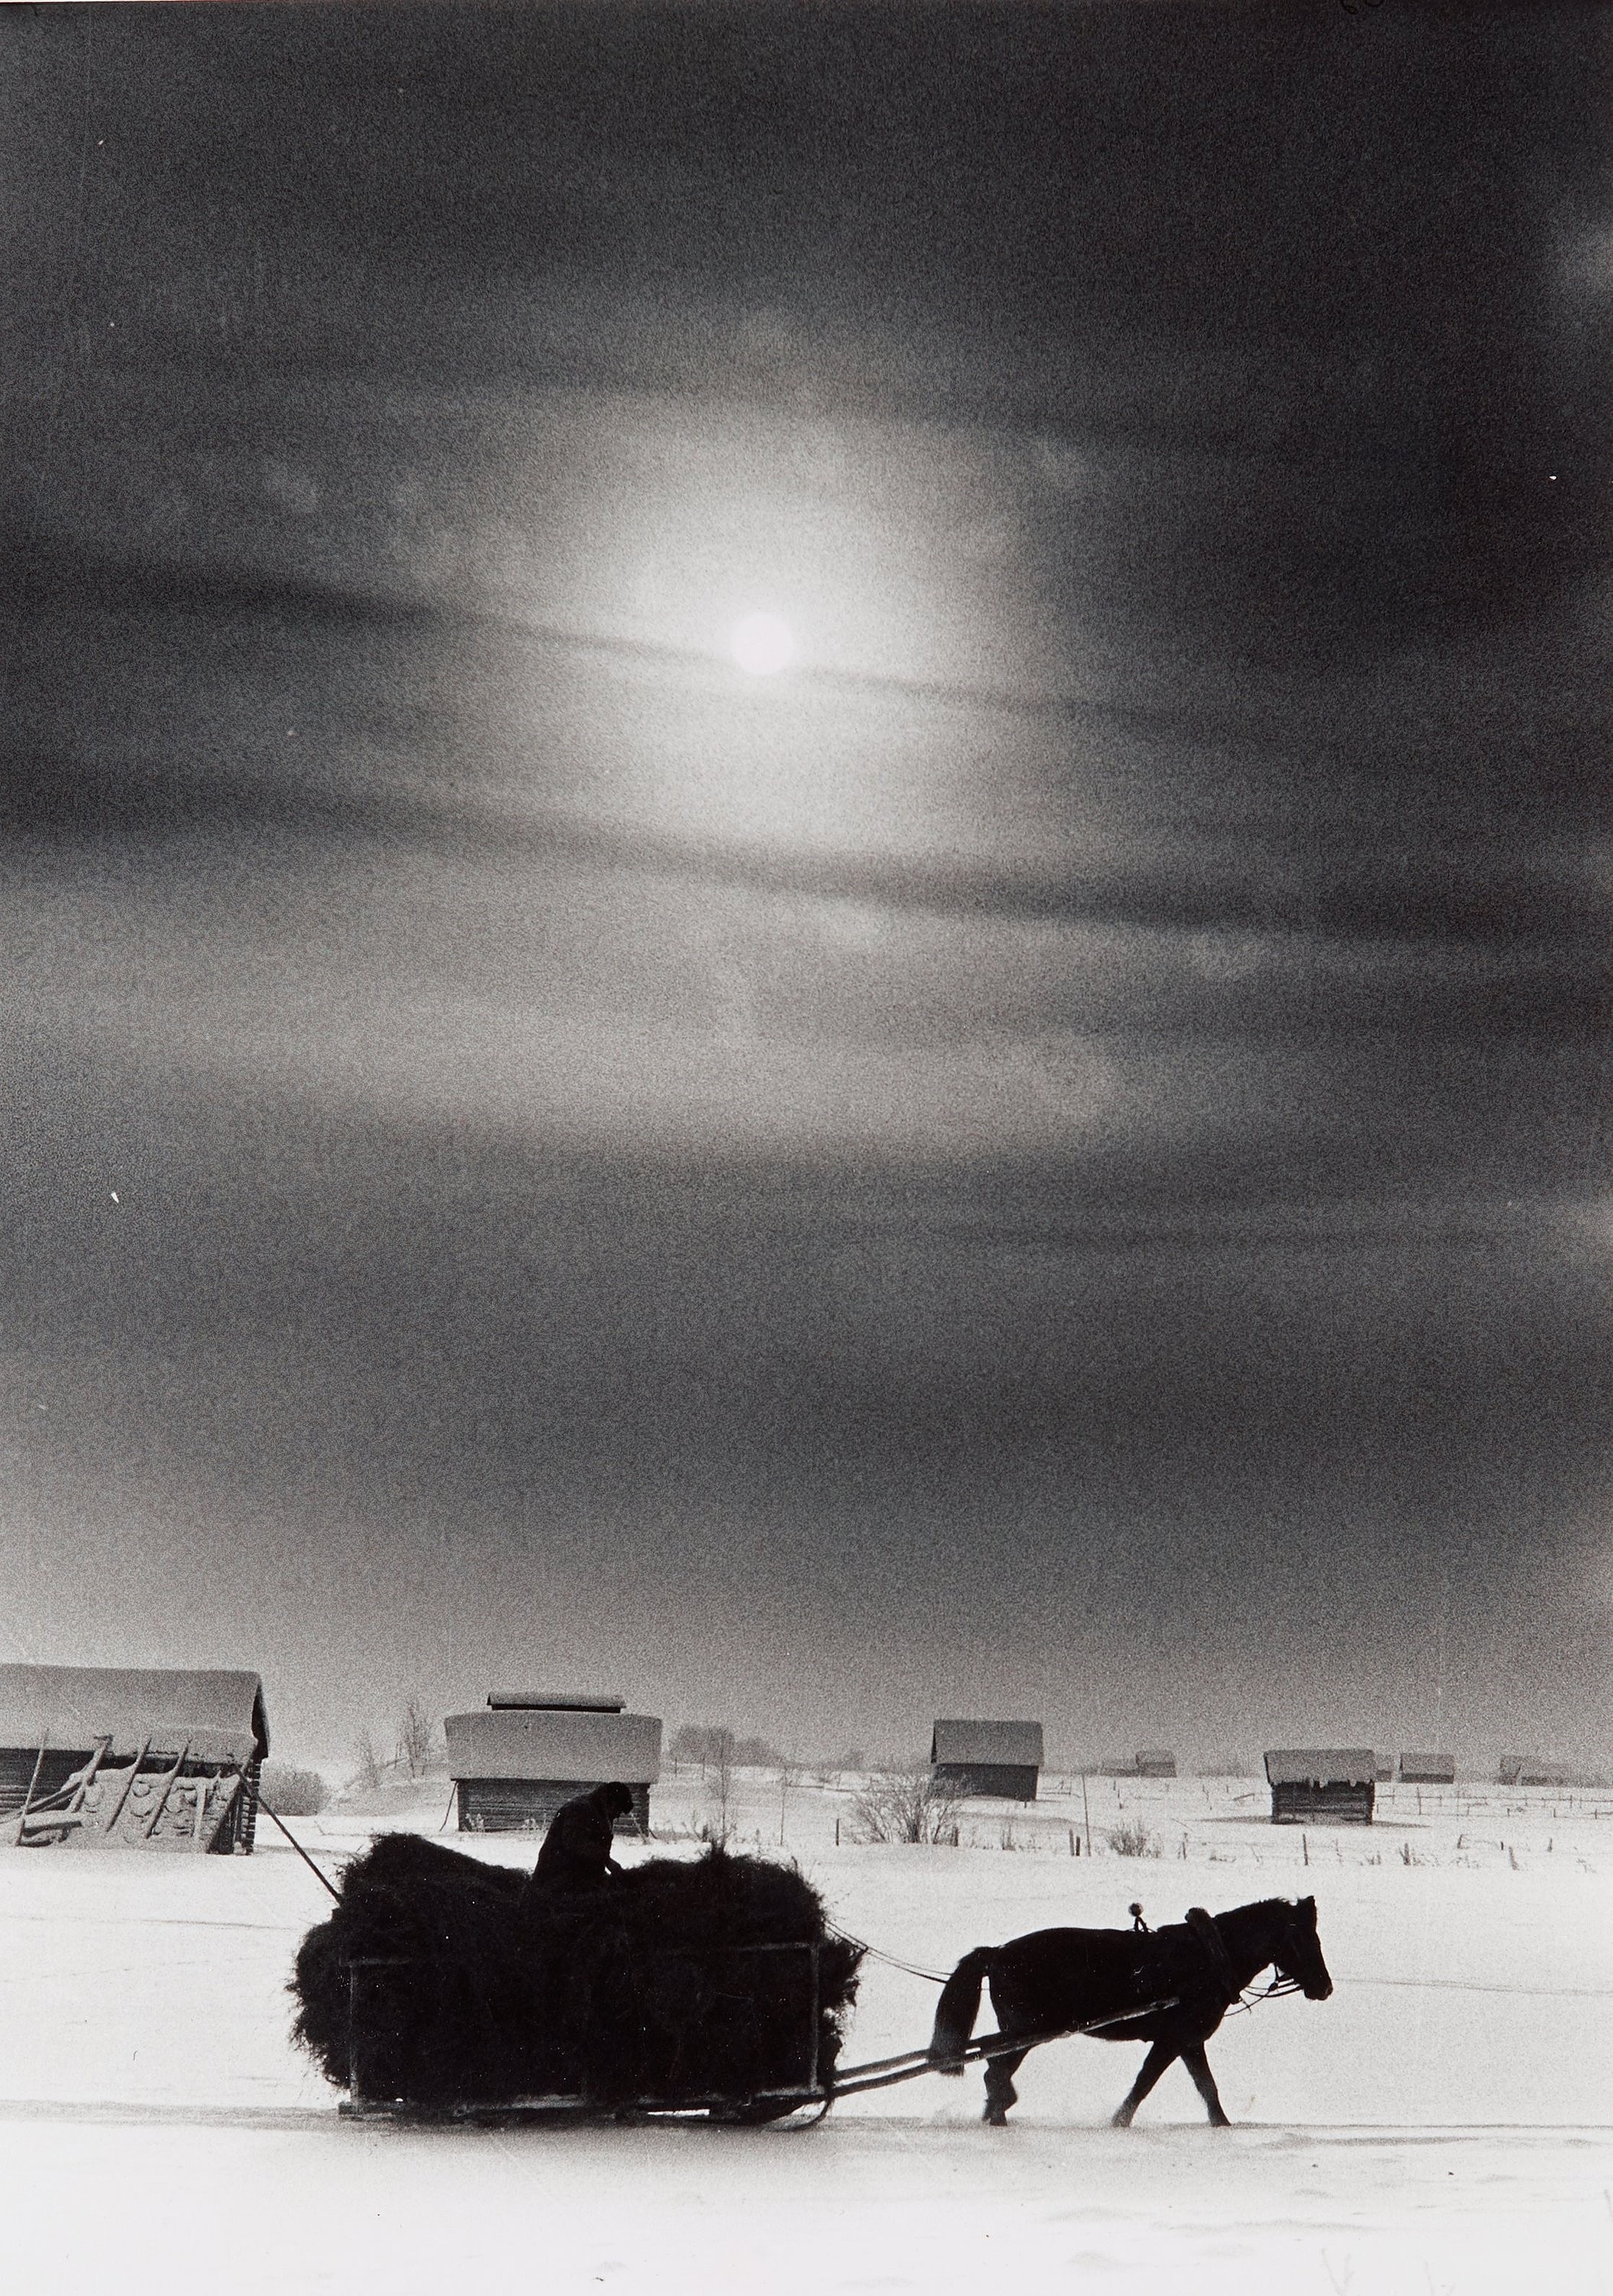 Возвращение домой с сеном, Норрботтен, 1966. Фотограф Суне Юнссон